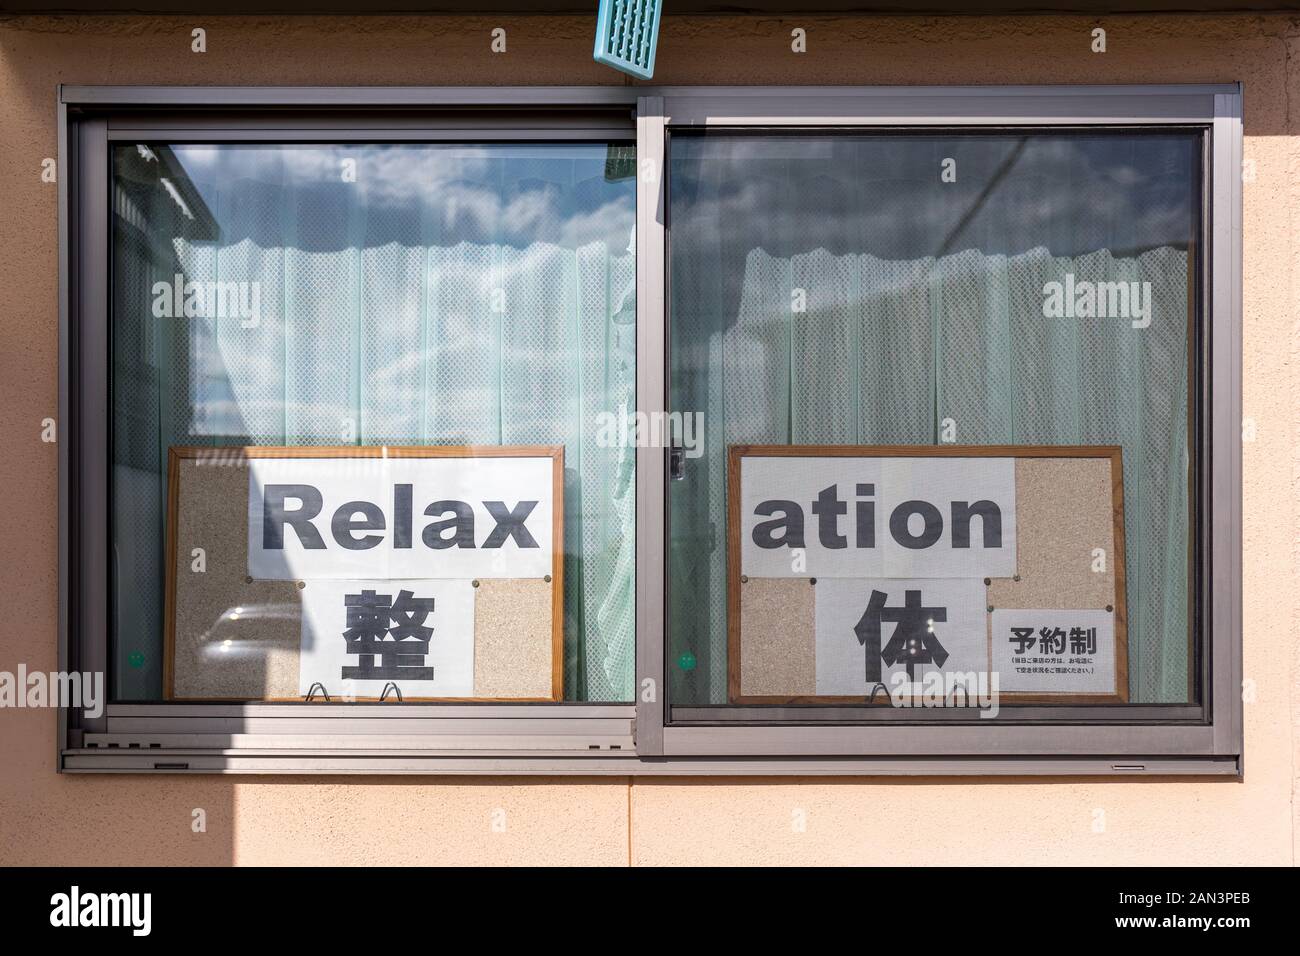 'Relax' 'ation' - signe de détente répartis sur deux fenêtres ; japonais et anglais Banque D'Images